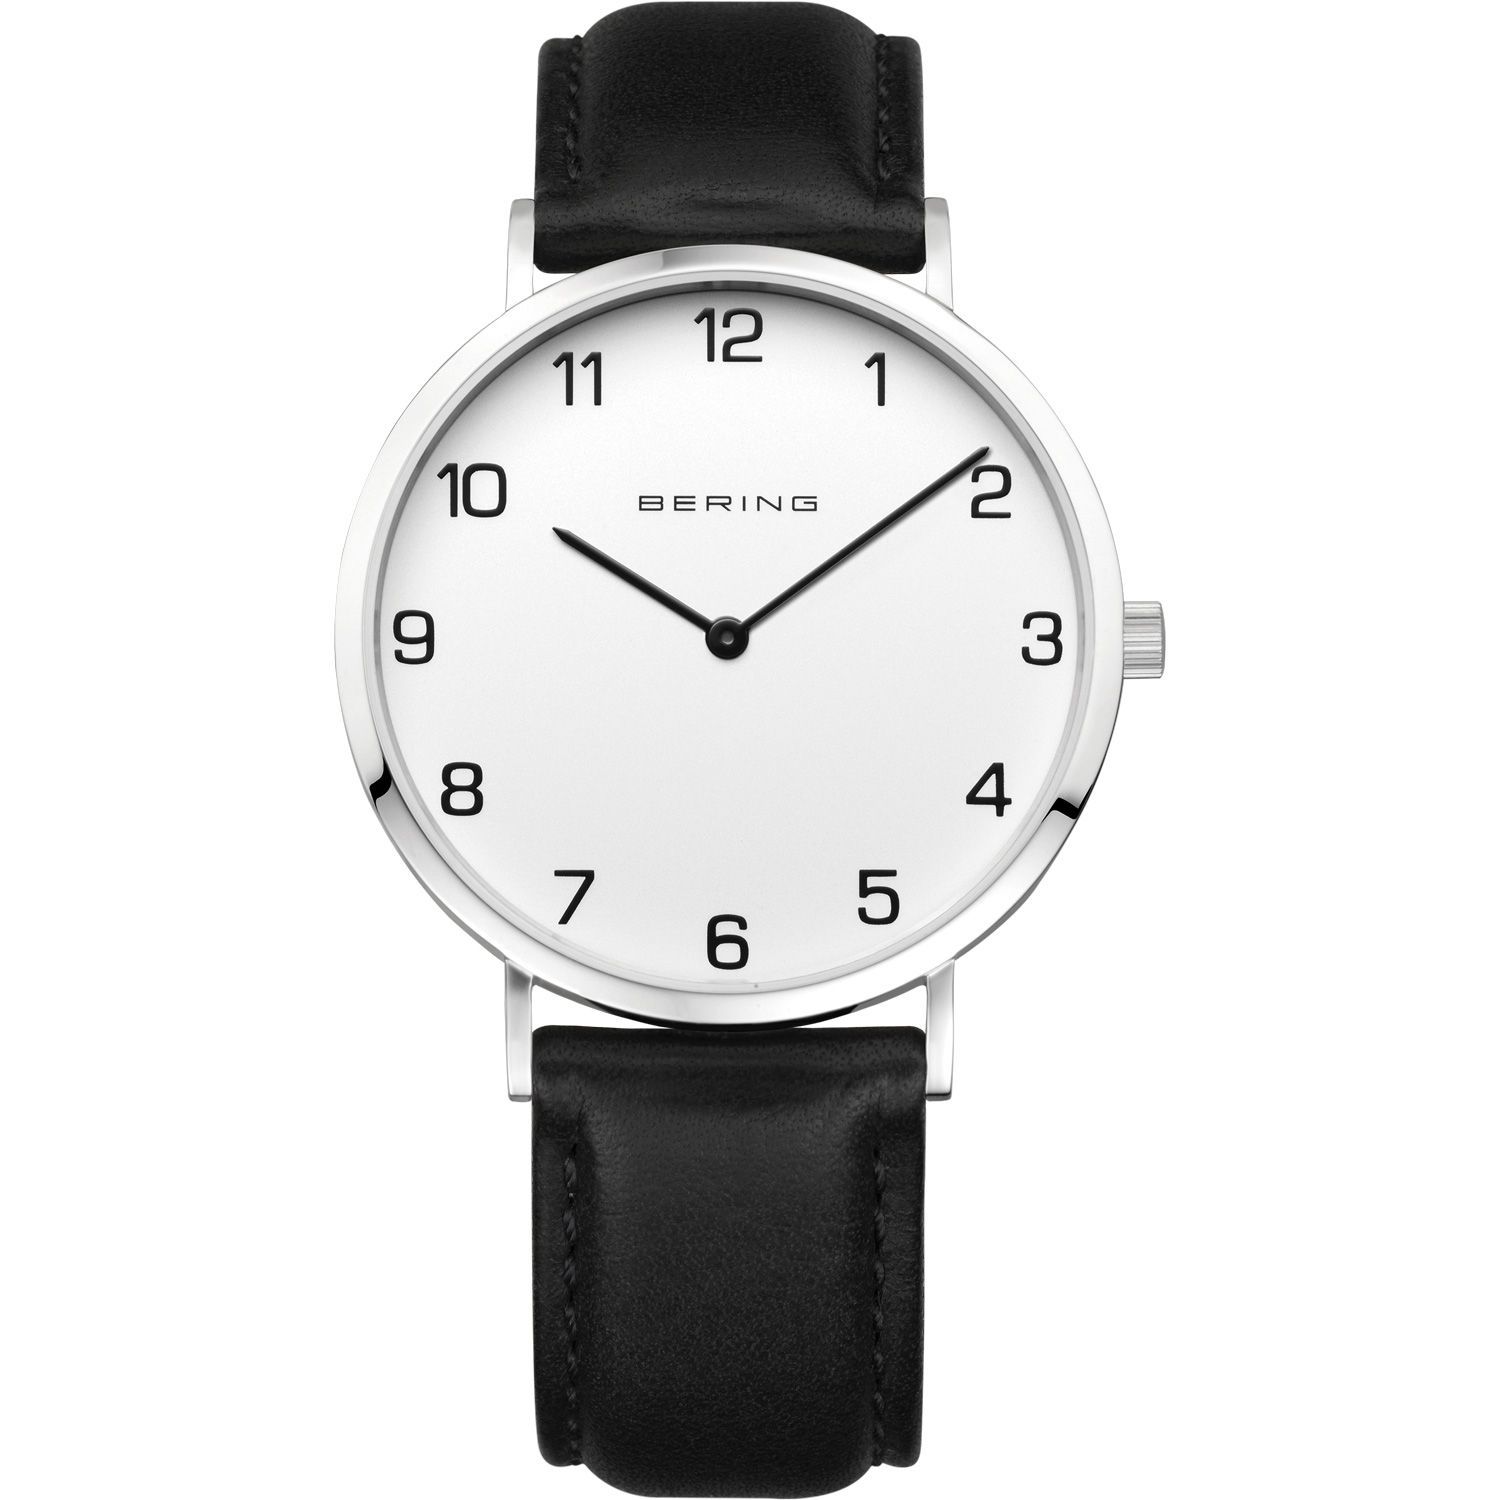  Bering 13940-404 - мужские наручные часы из коллекции Classic